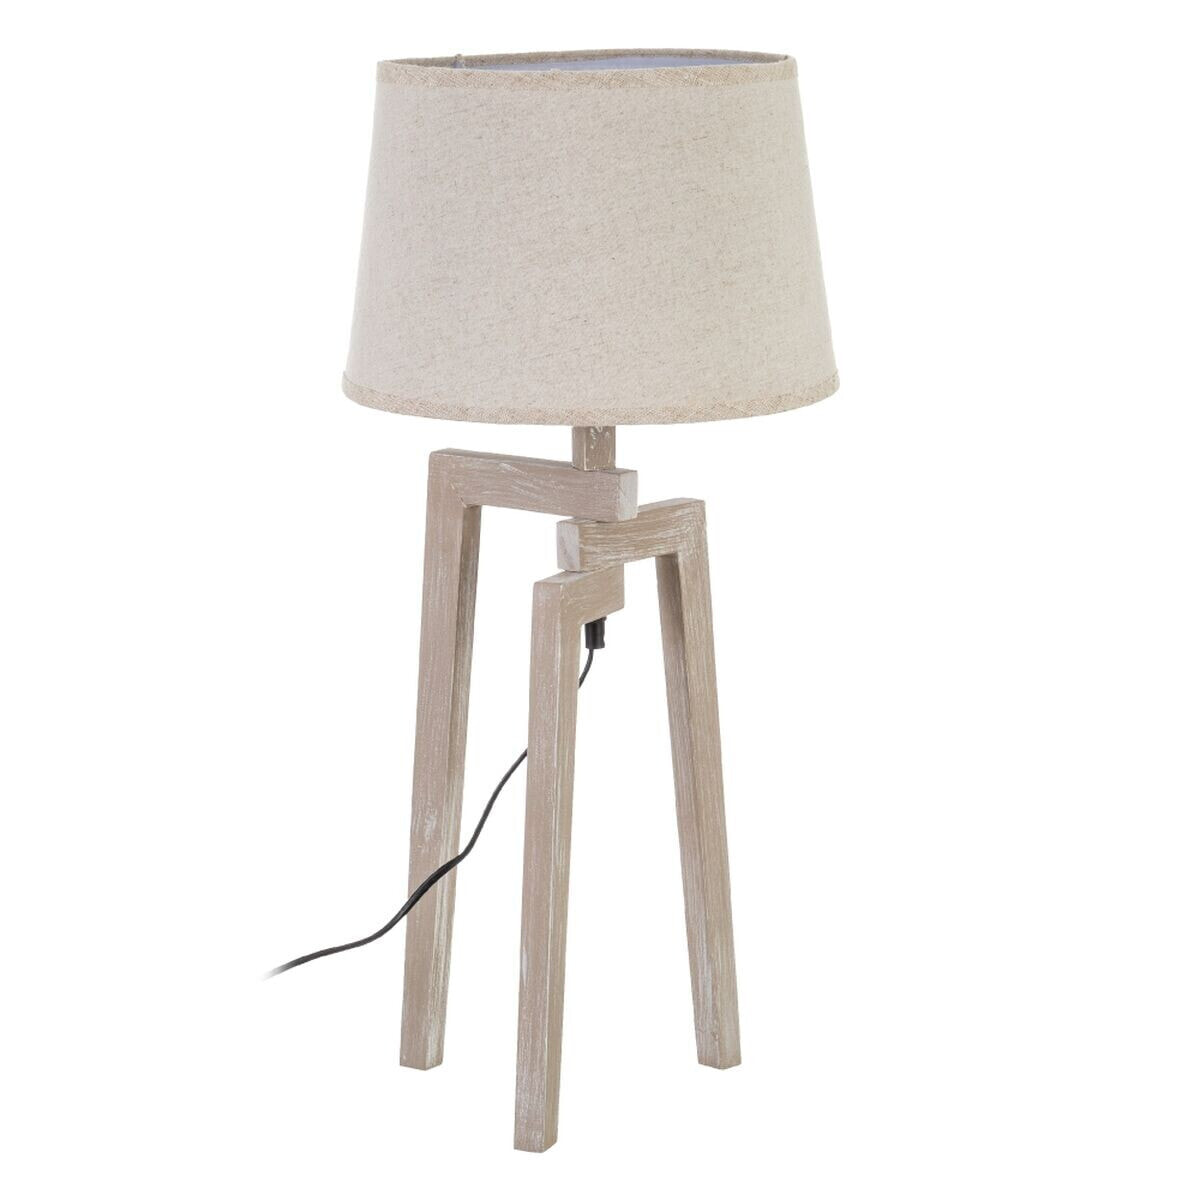 Desk lamp White Linen Wood 60 W 220 V 240 V 220-240 V 30 x 30 x 66 cm